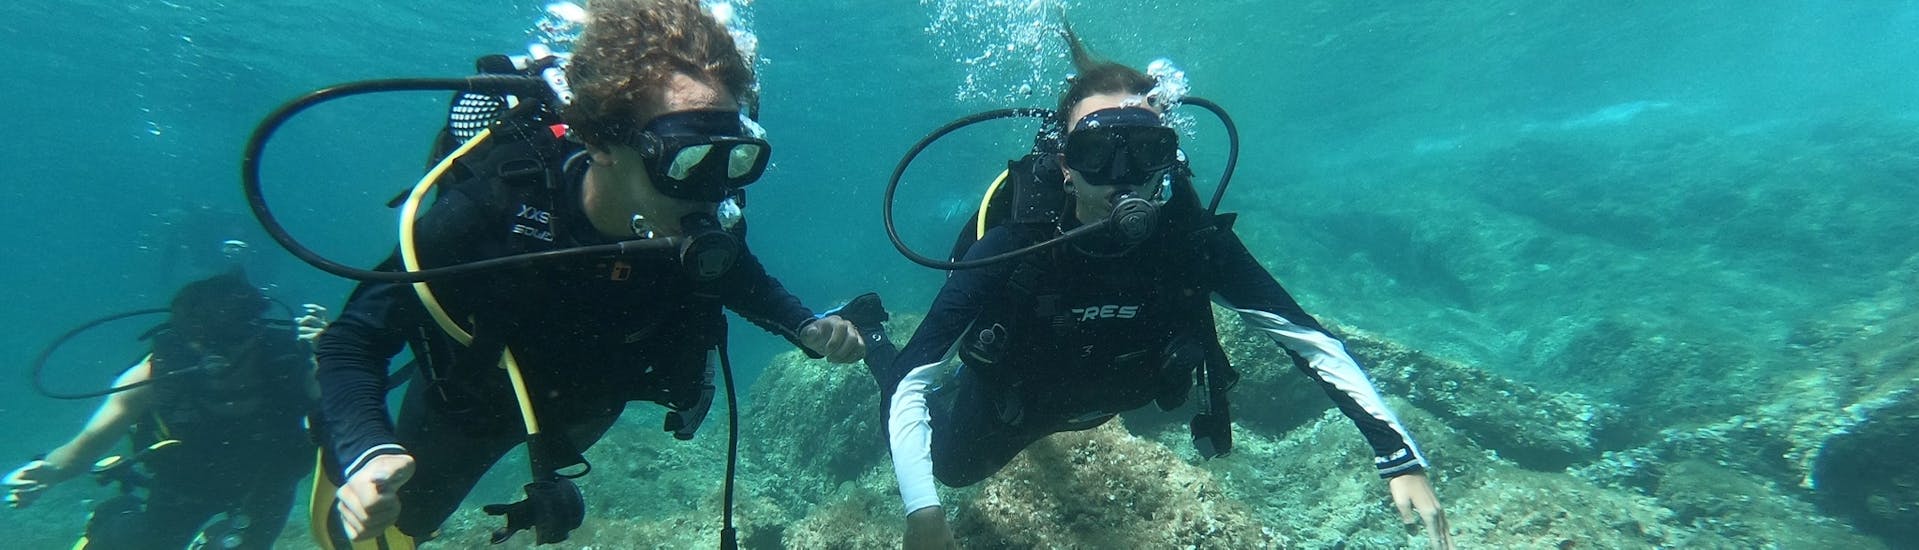 Dos amigos buceando en las aguas azules de Mallorca durante un curso PADI Discover Scuba Diving con Albatros Diving en Cala Bona.